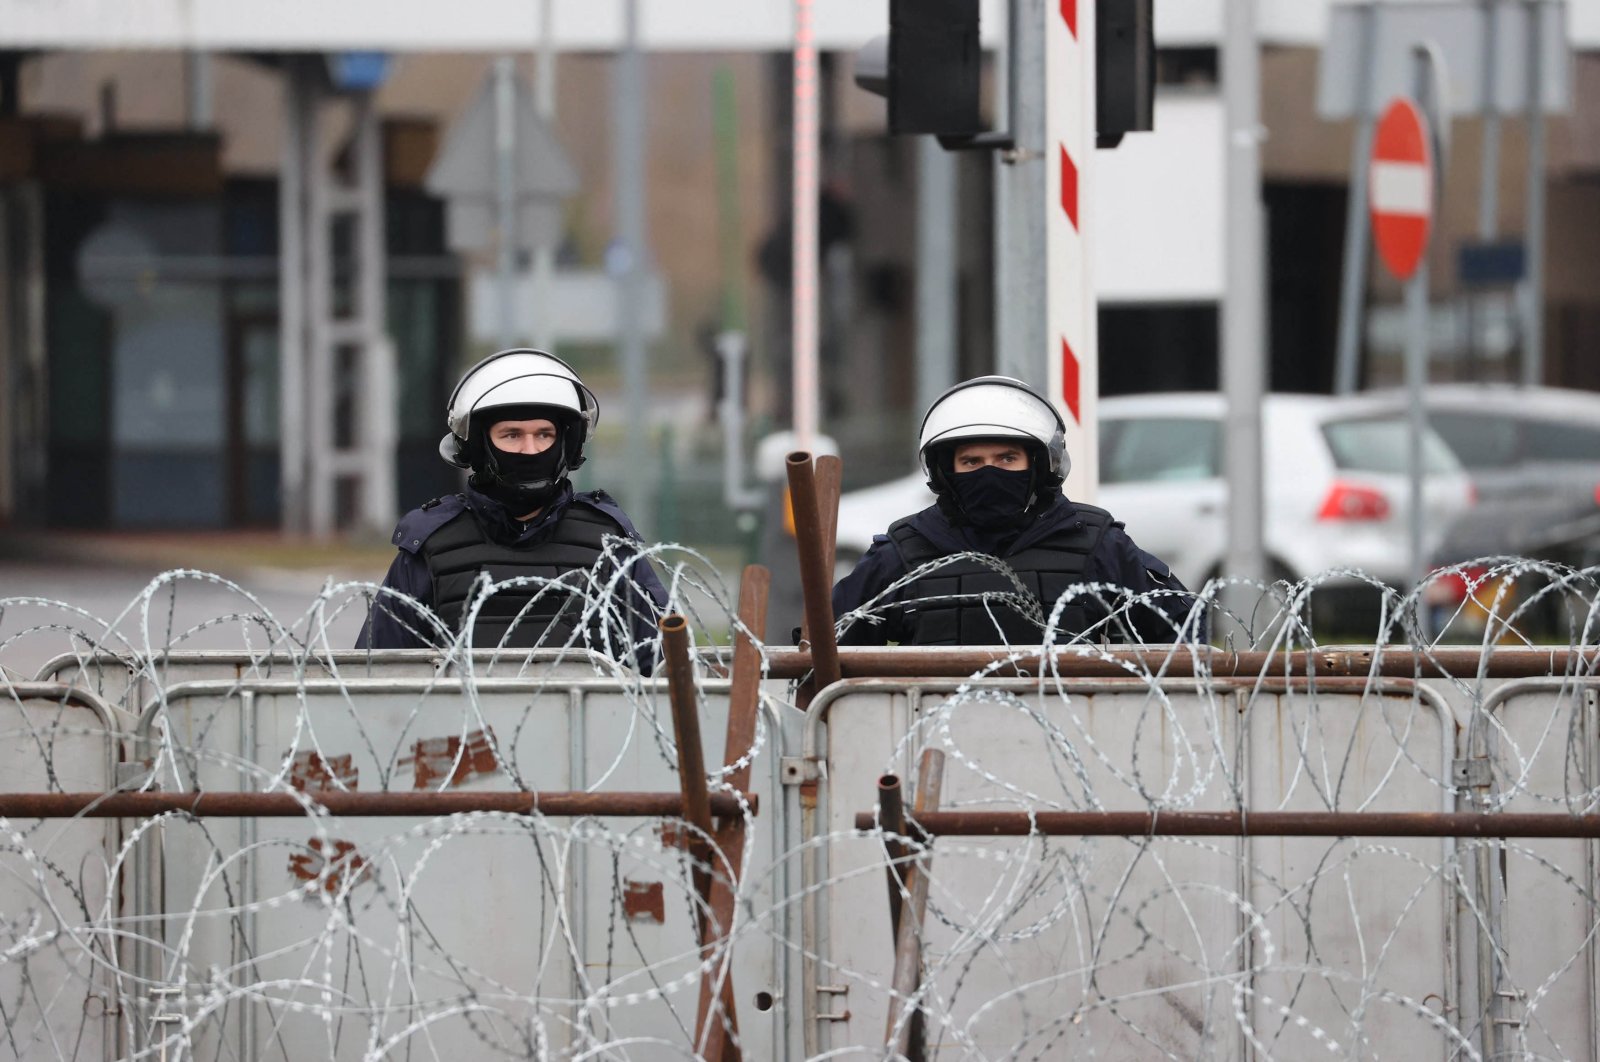 Polandia mengklaim Belarus terus membawa migran ke perbatasannya